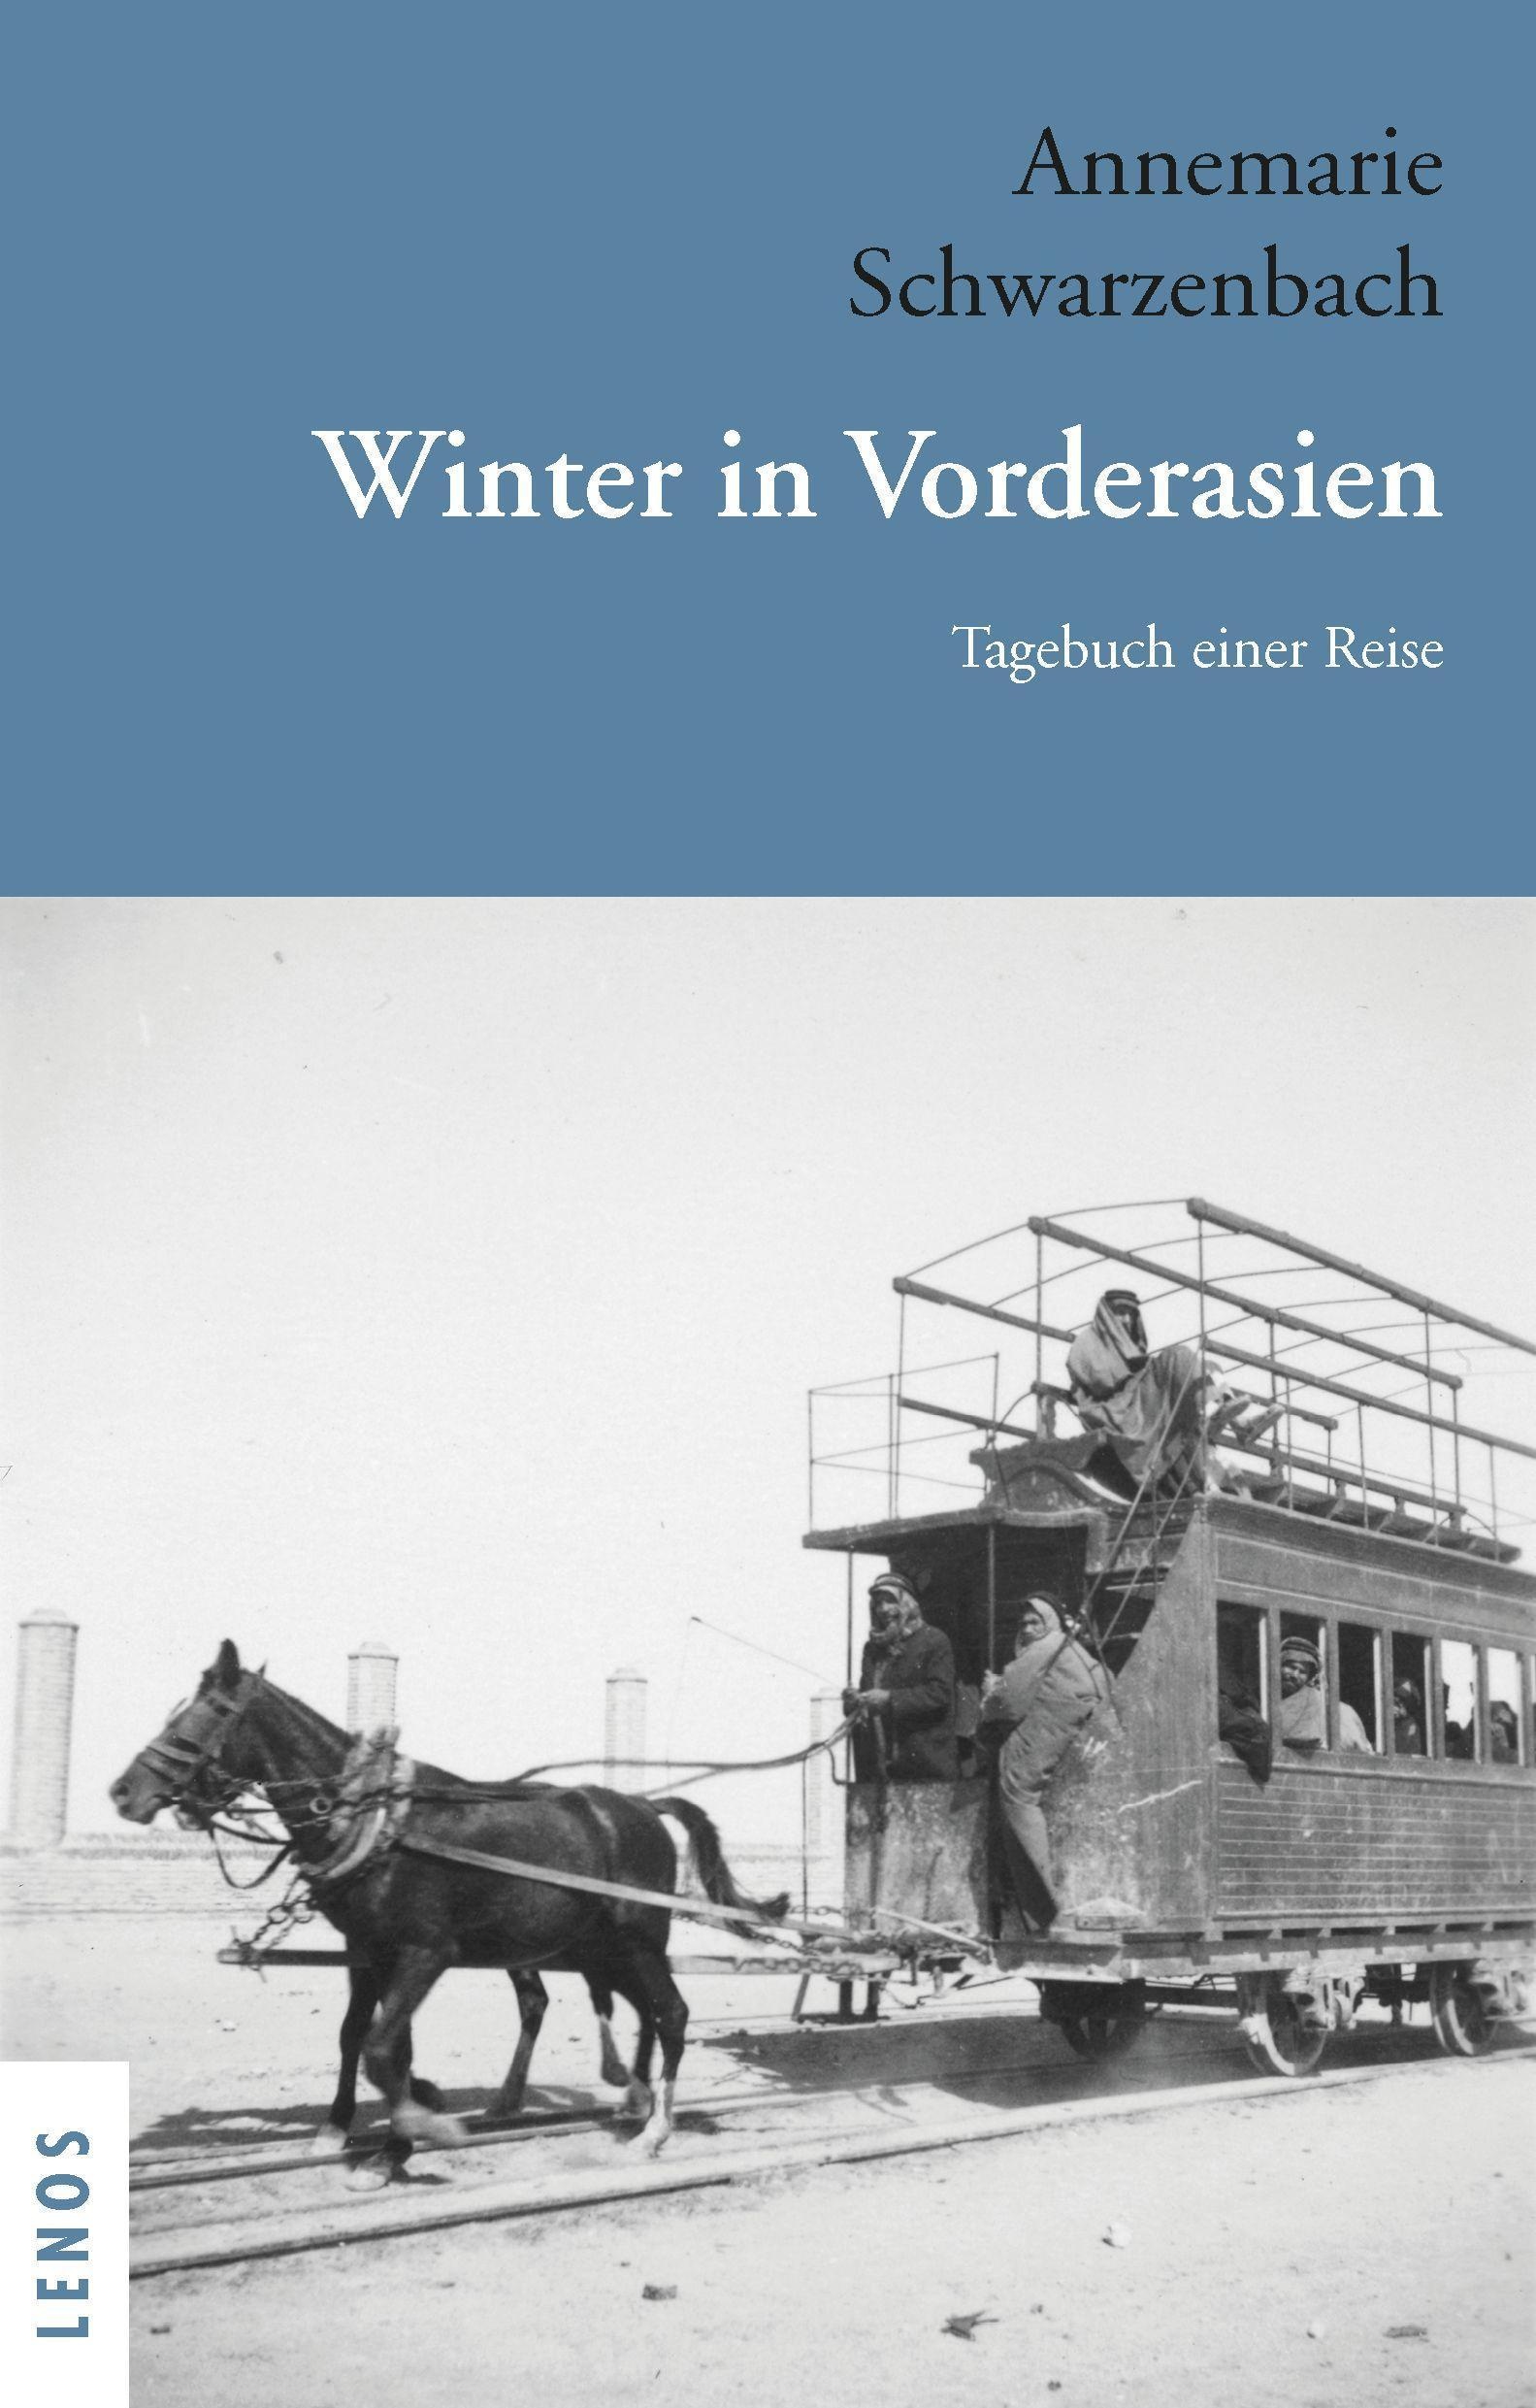 Ausgewählte Werke Von Annemarie Schwarzenbach / Winter In Vorderasien - Annemarie Schwarzenbach